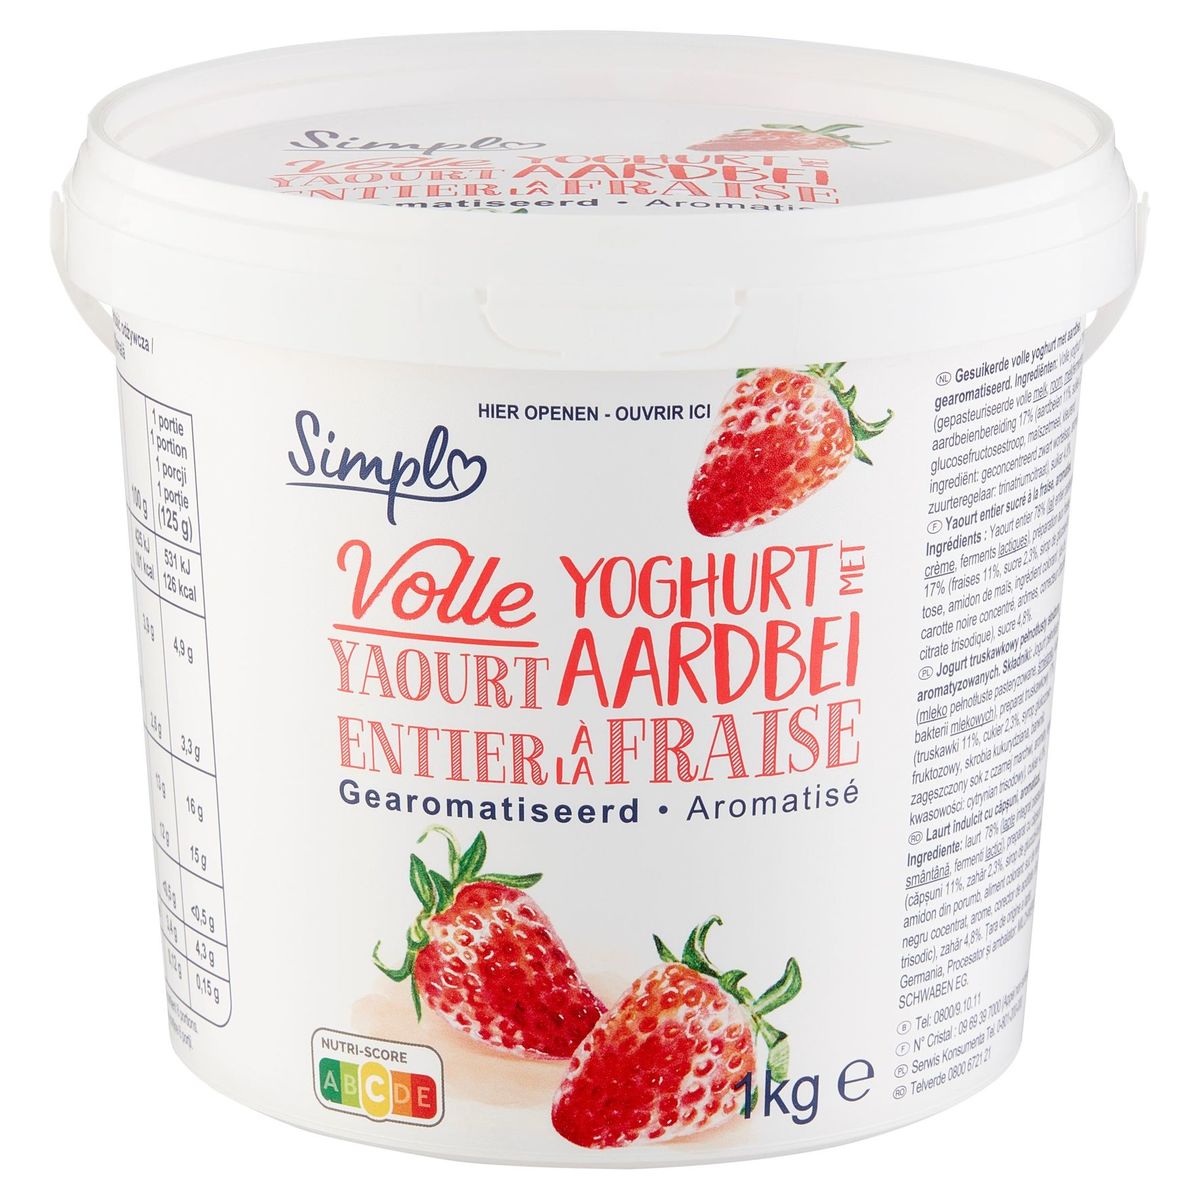 Simpl Vole Yoghurt met Aardbei Gearomatiseerd 1 kg